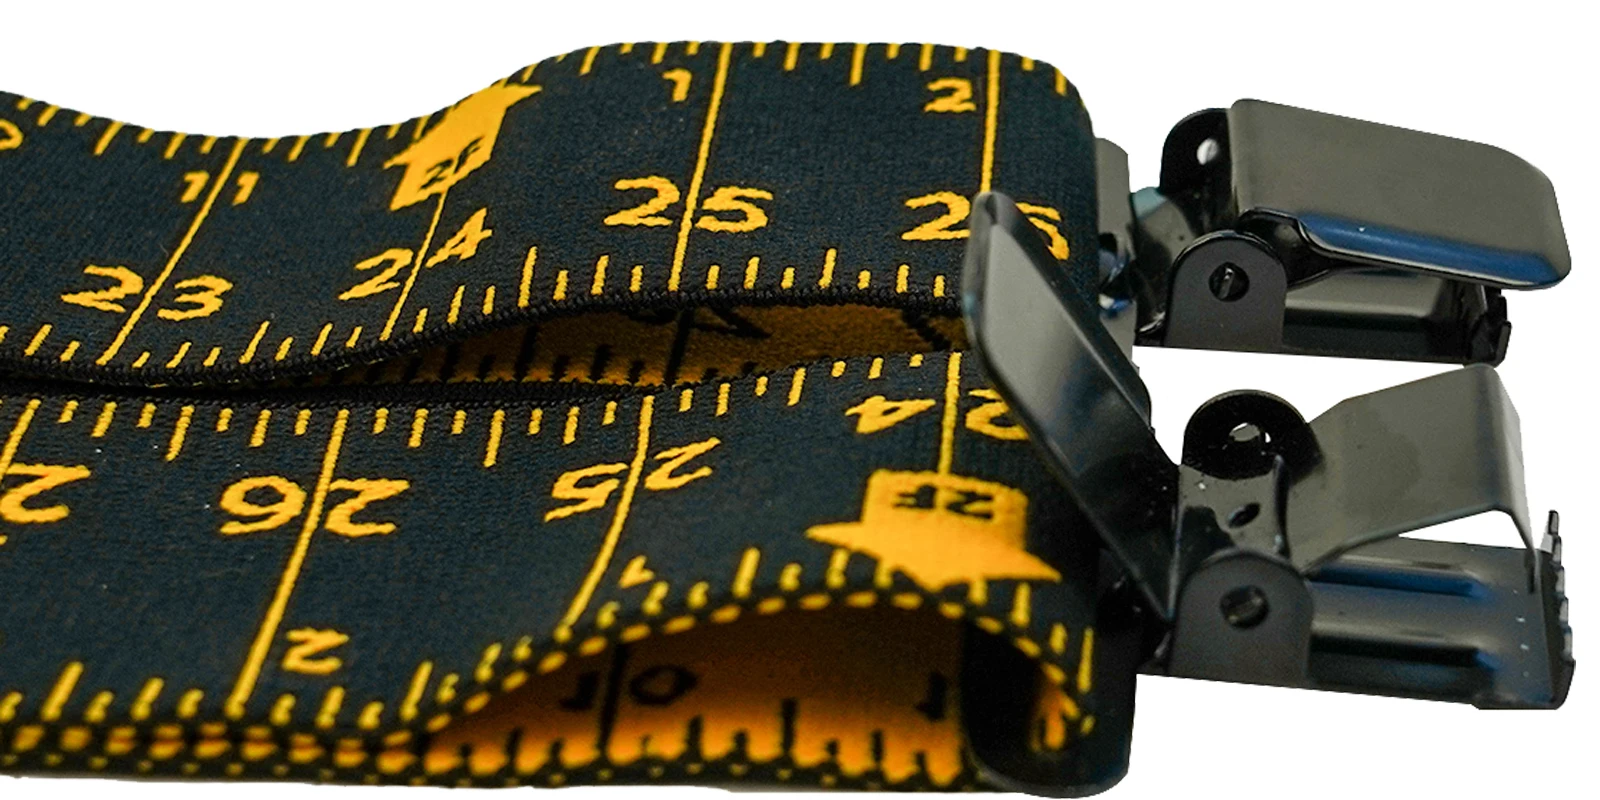 Kunn Men Suspender Late Maatspatroon Suspender Volledig sterkte elastisch met zware clipliniaalonderschriften